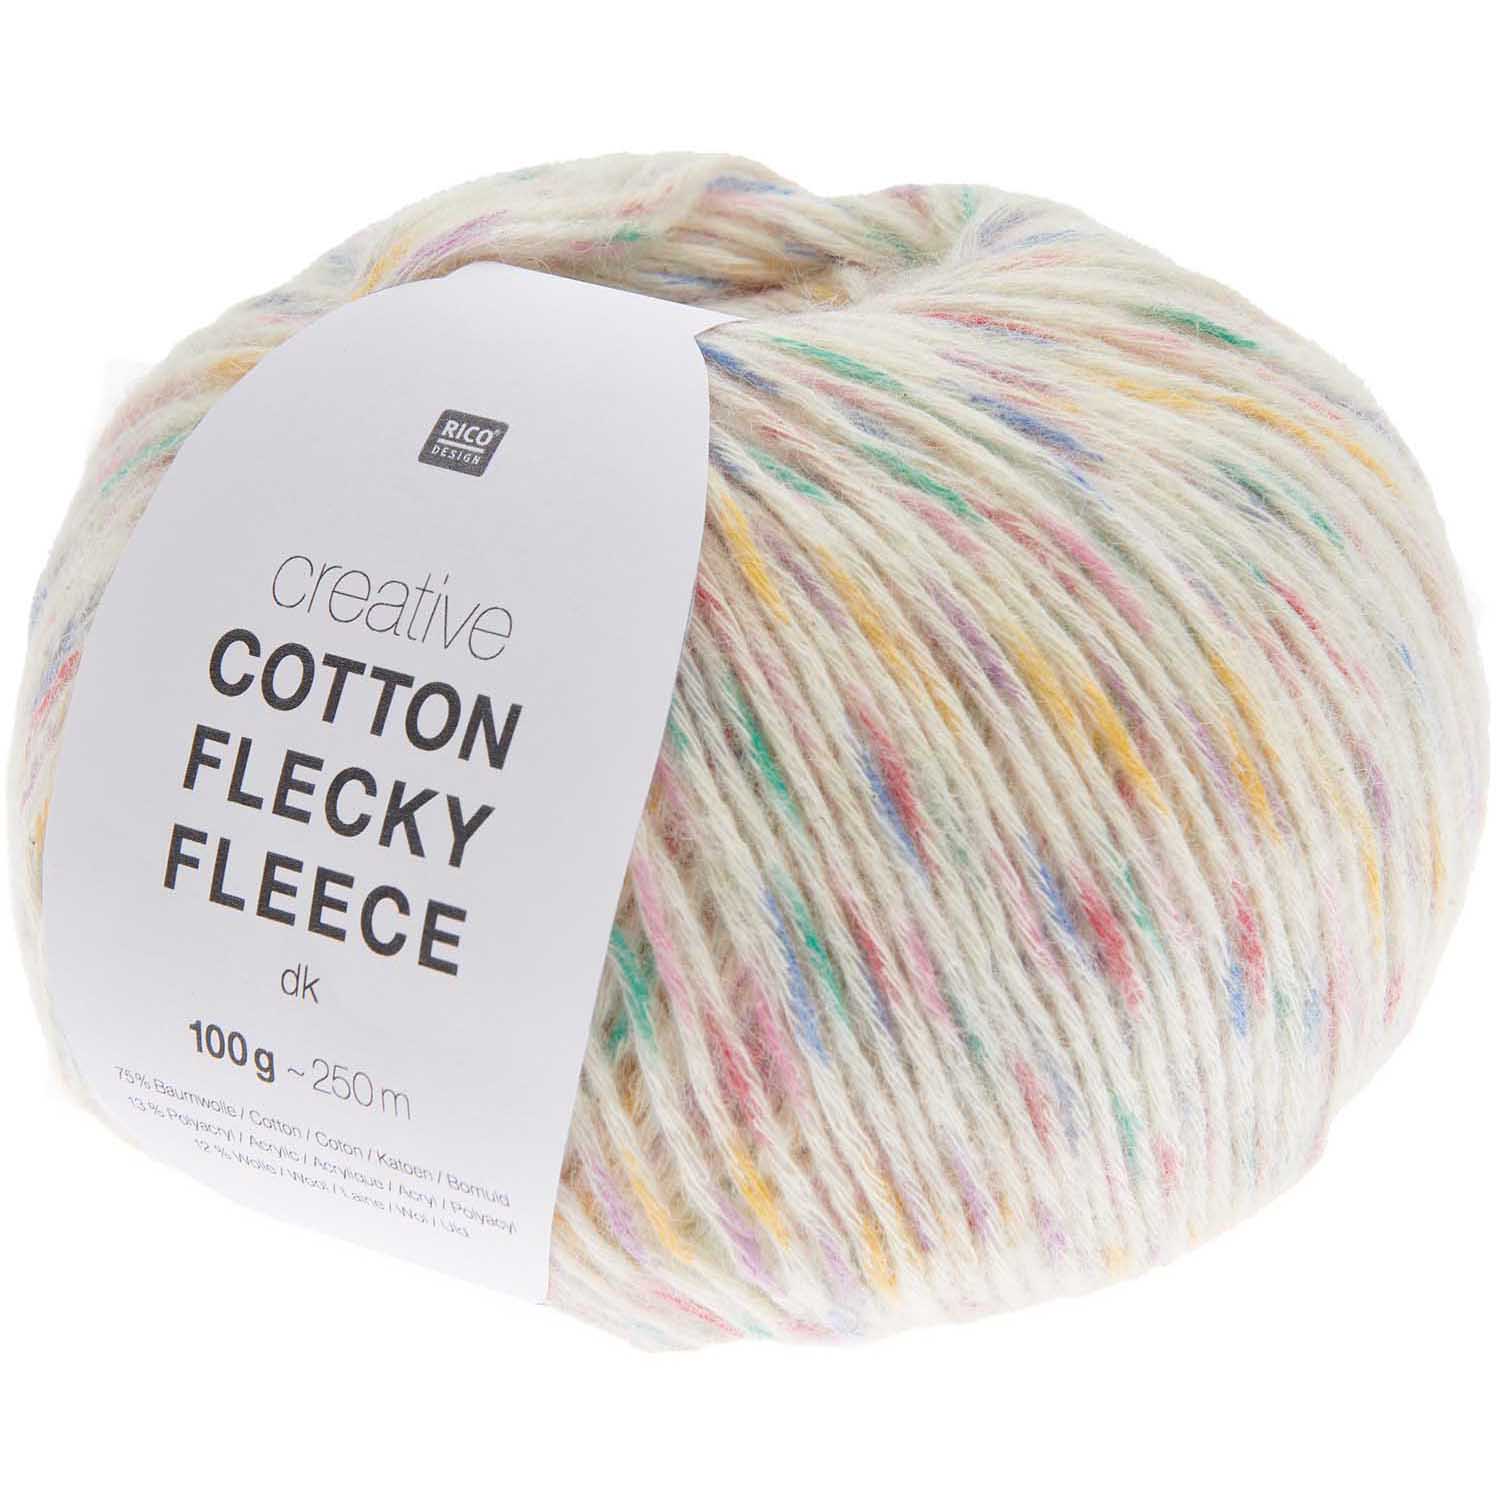 Rico Creative Cotton Flecky Fleece kleur 4